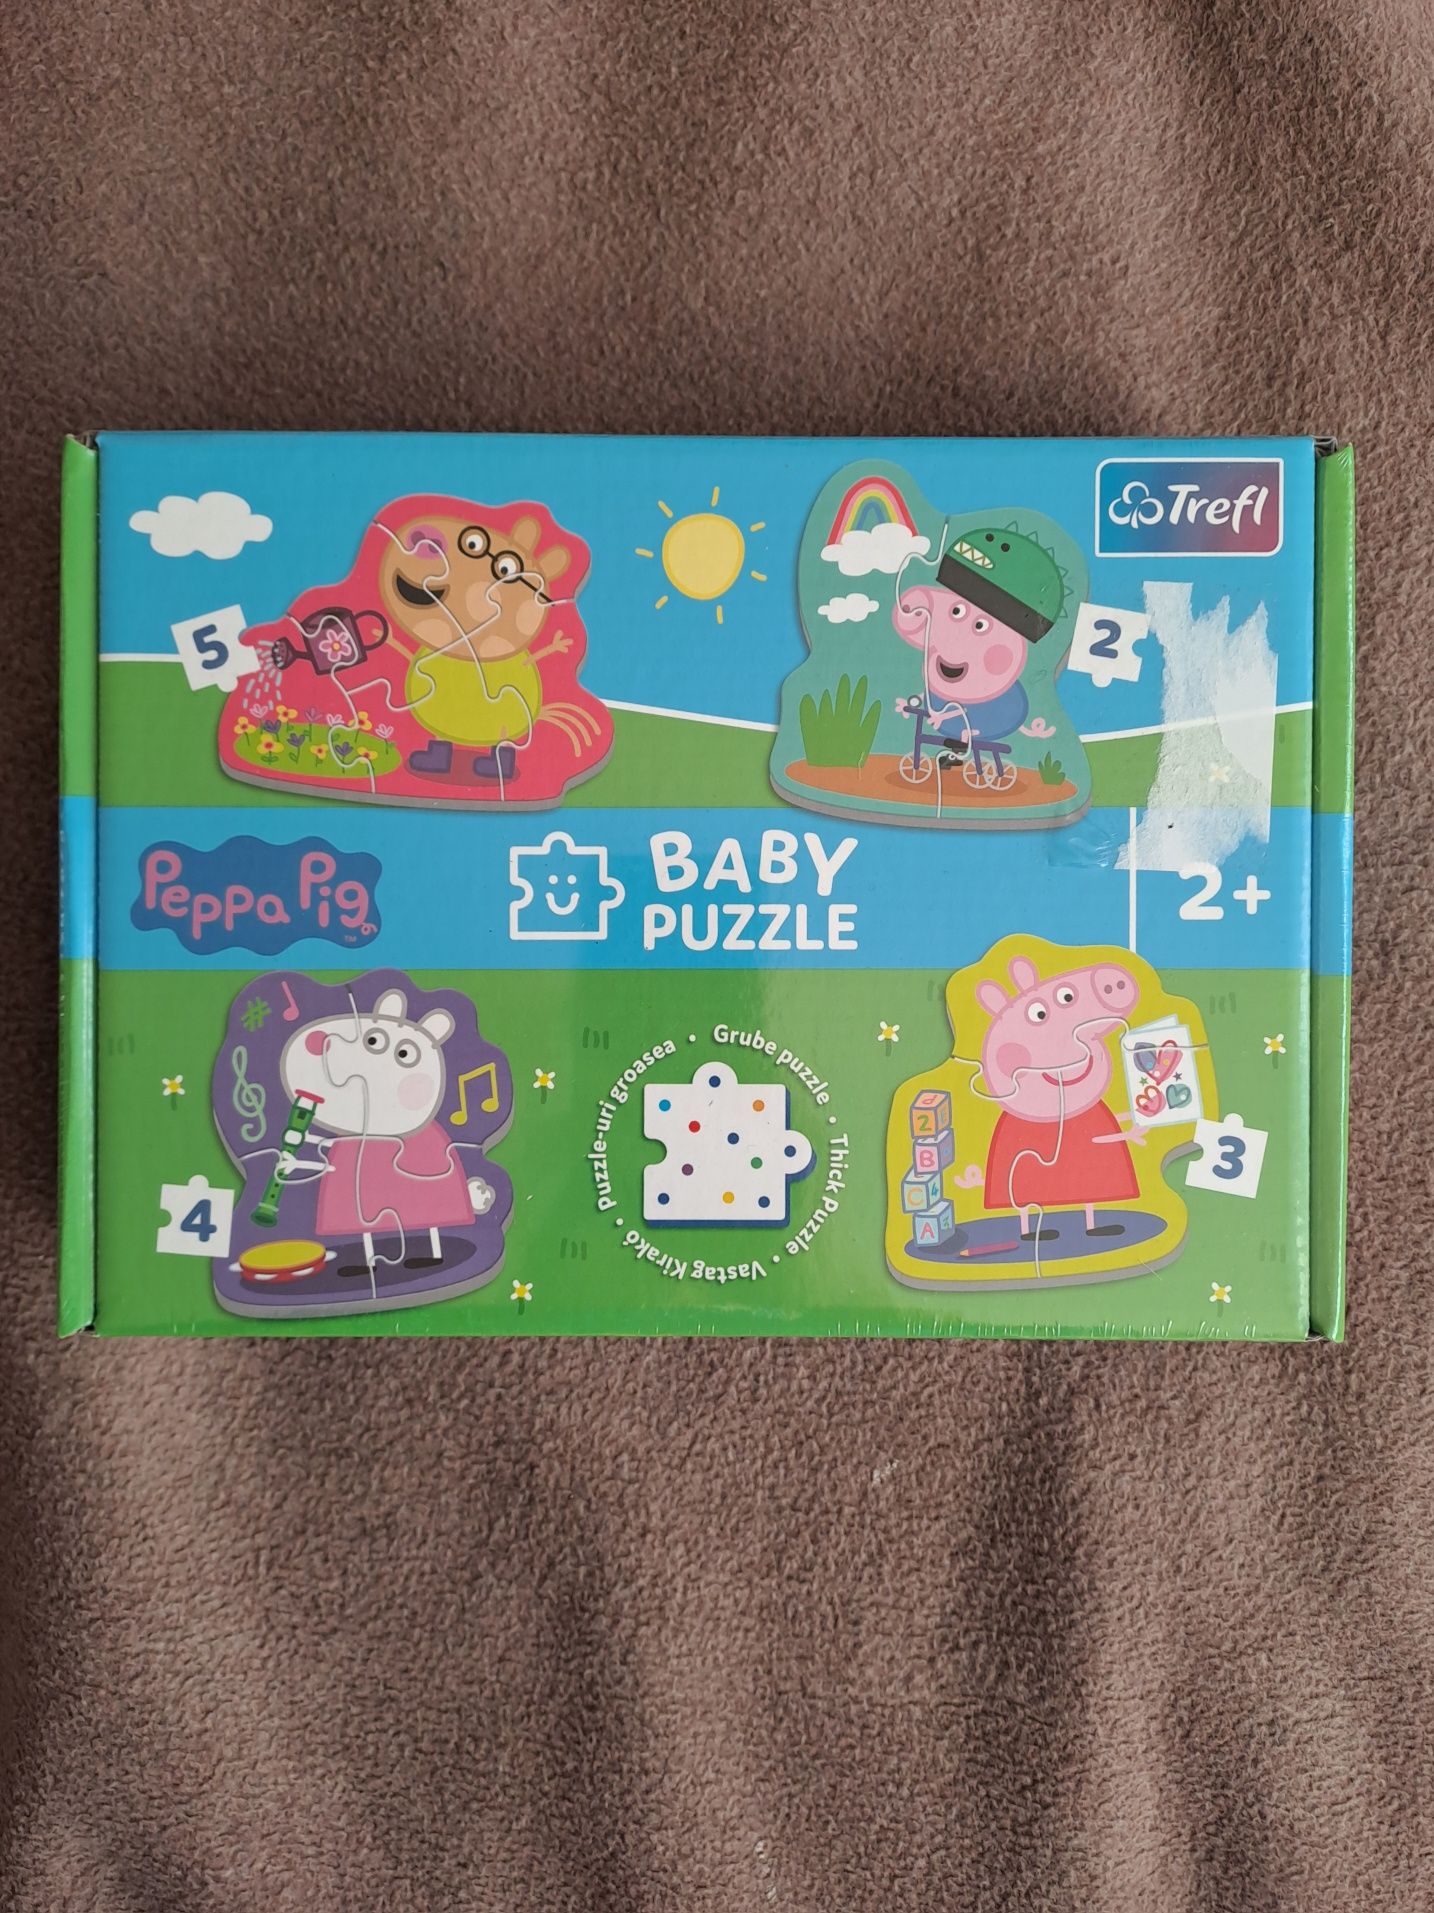 Świnka Peppa logic Lisciani gra logiczna Trefl Baby Puzzle nowe 2+